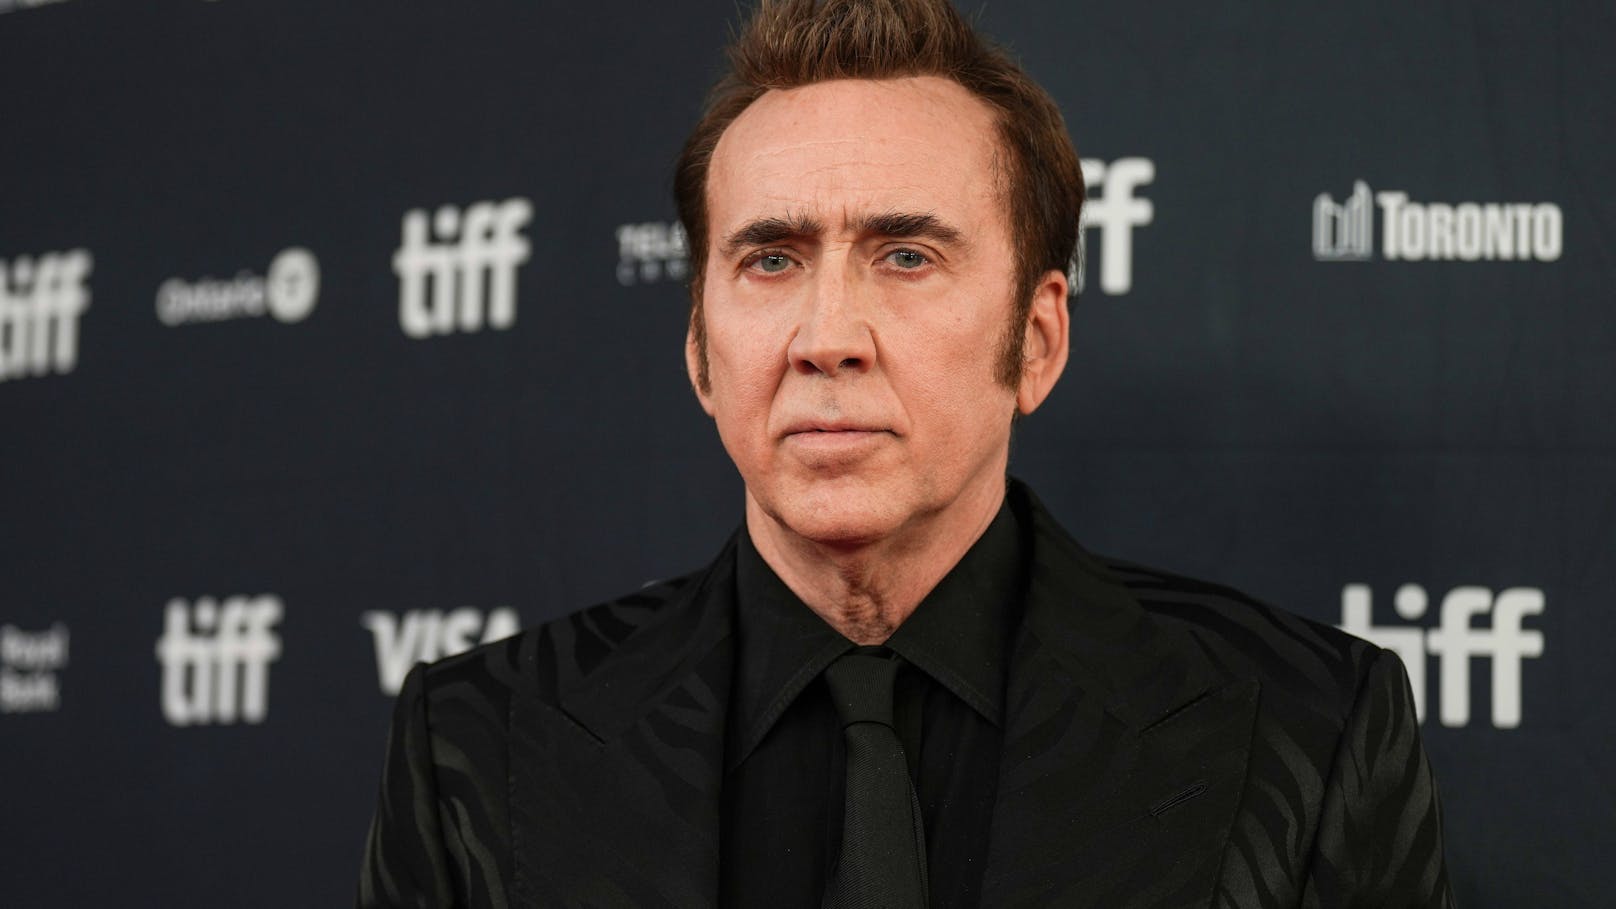 Über 100 Filme: Nicolas Cage spricht von Karriereende